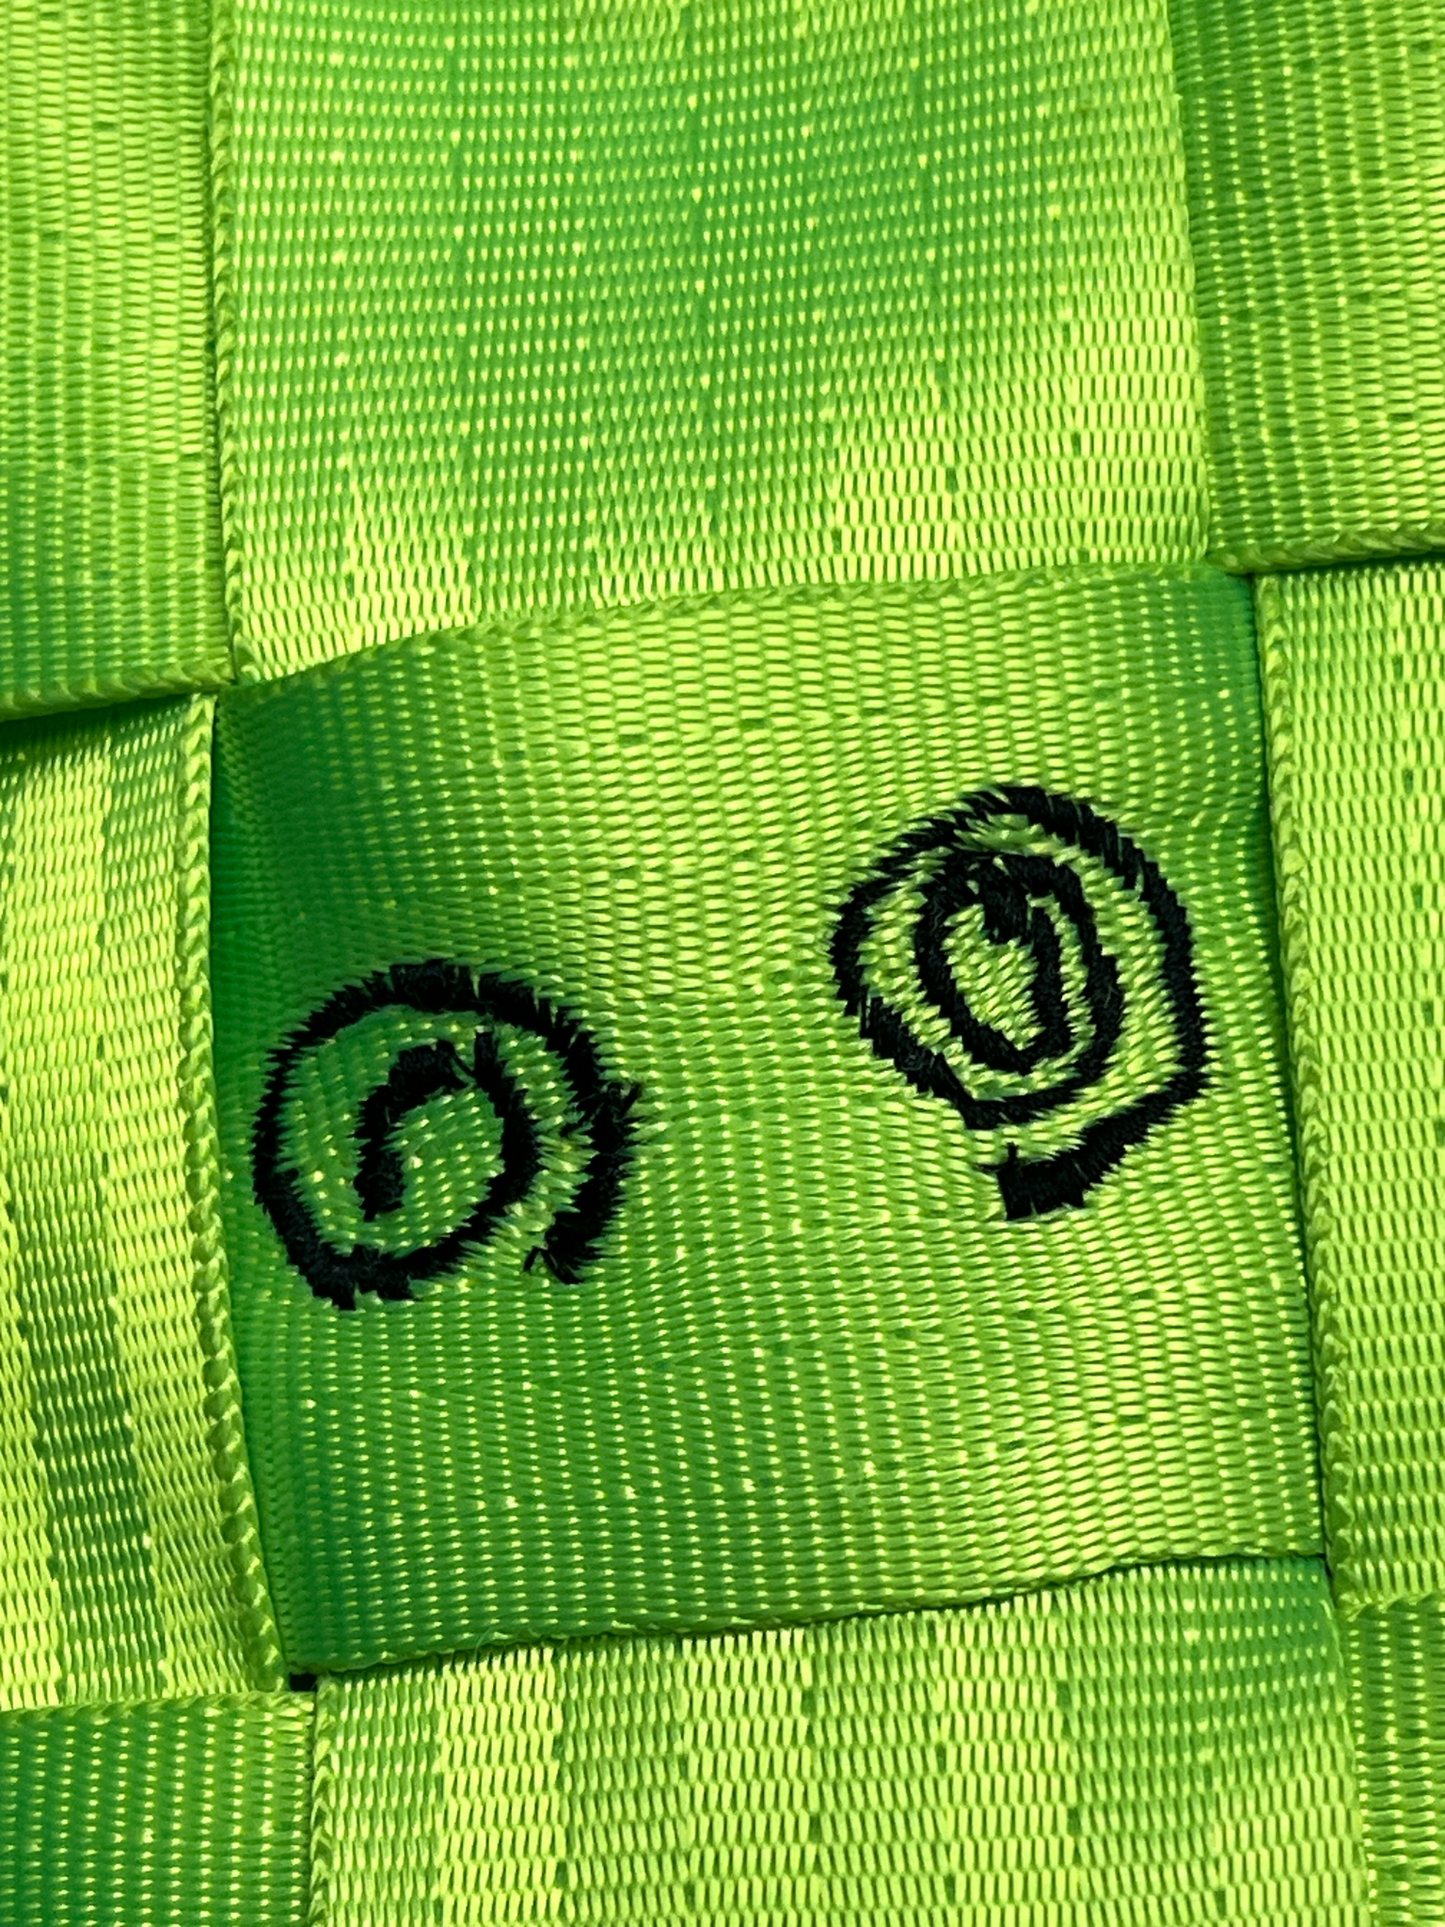 Die Horny Neon Green Webbing Bag